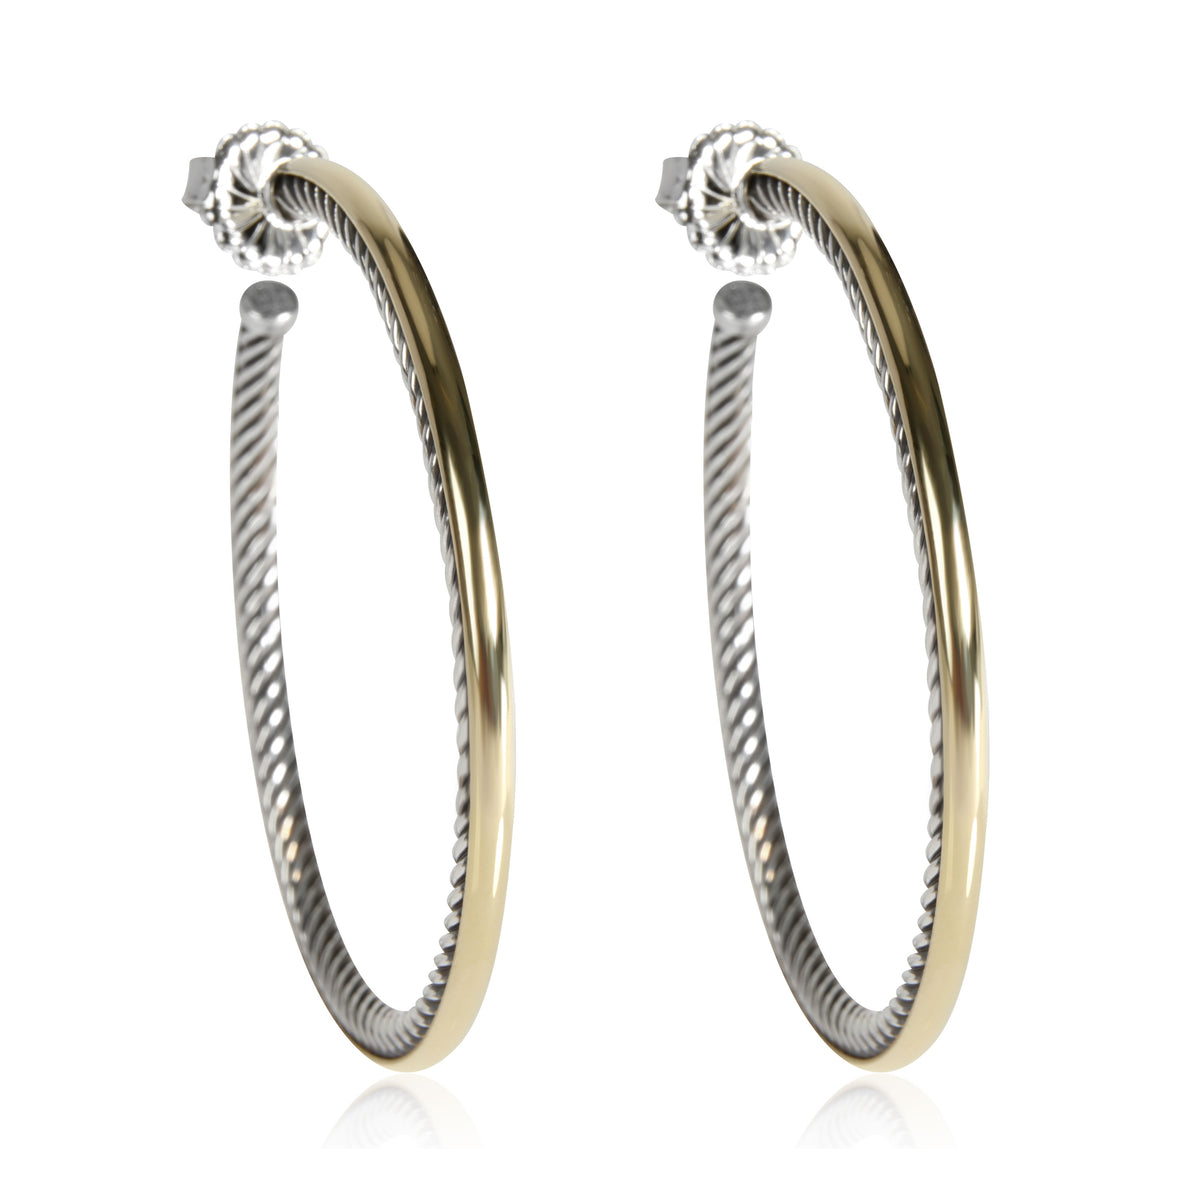 David Yurman Crossover Hoop Earring in 18K Yellow Gold/Sterling Silver